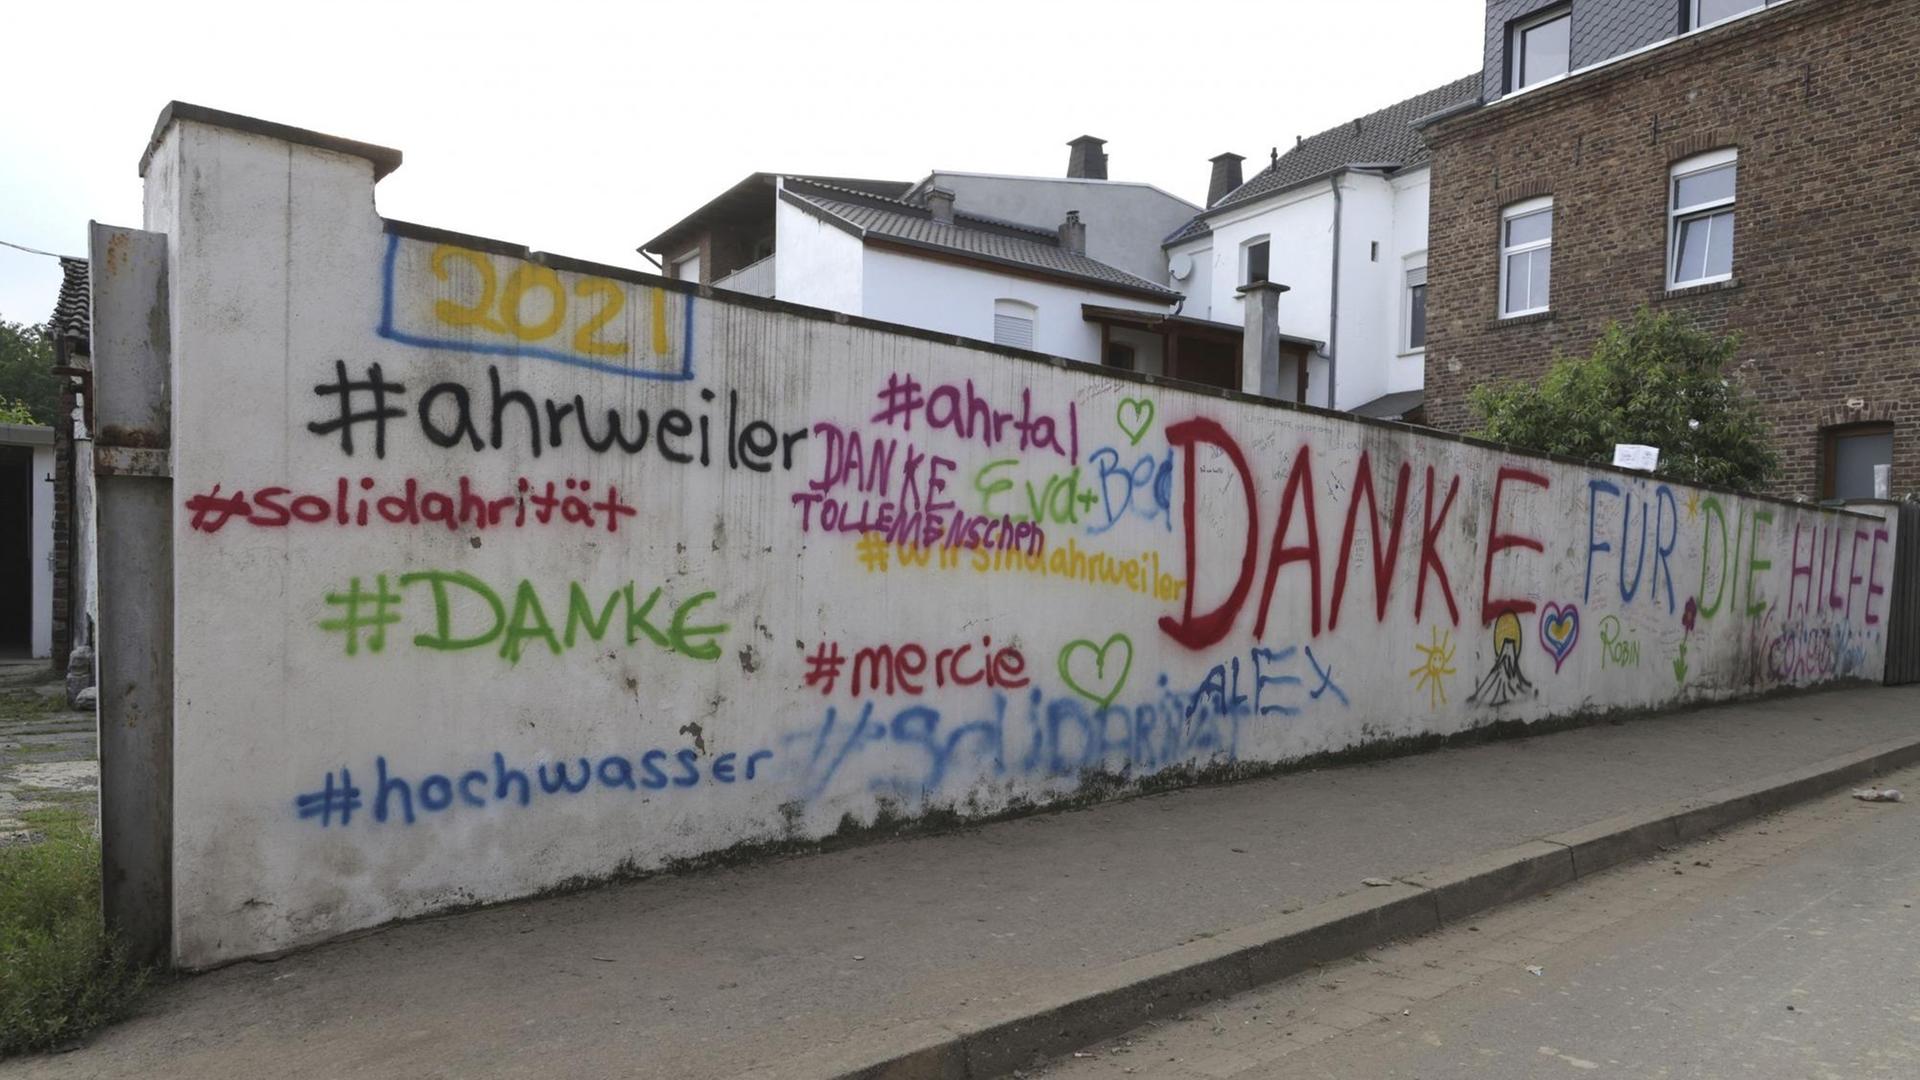 Schriftzüge auf einer Wand in Bad Neuenahr - Ahrweiler, unter anderem "Danke für die Hilfe"